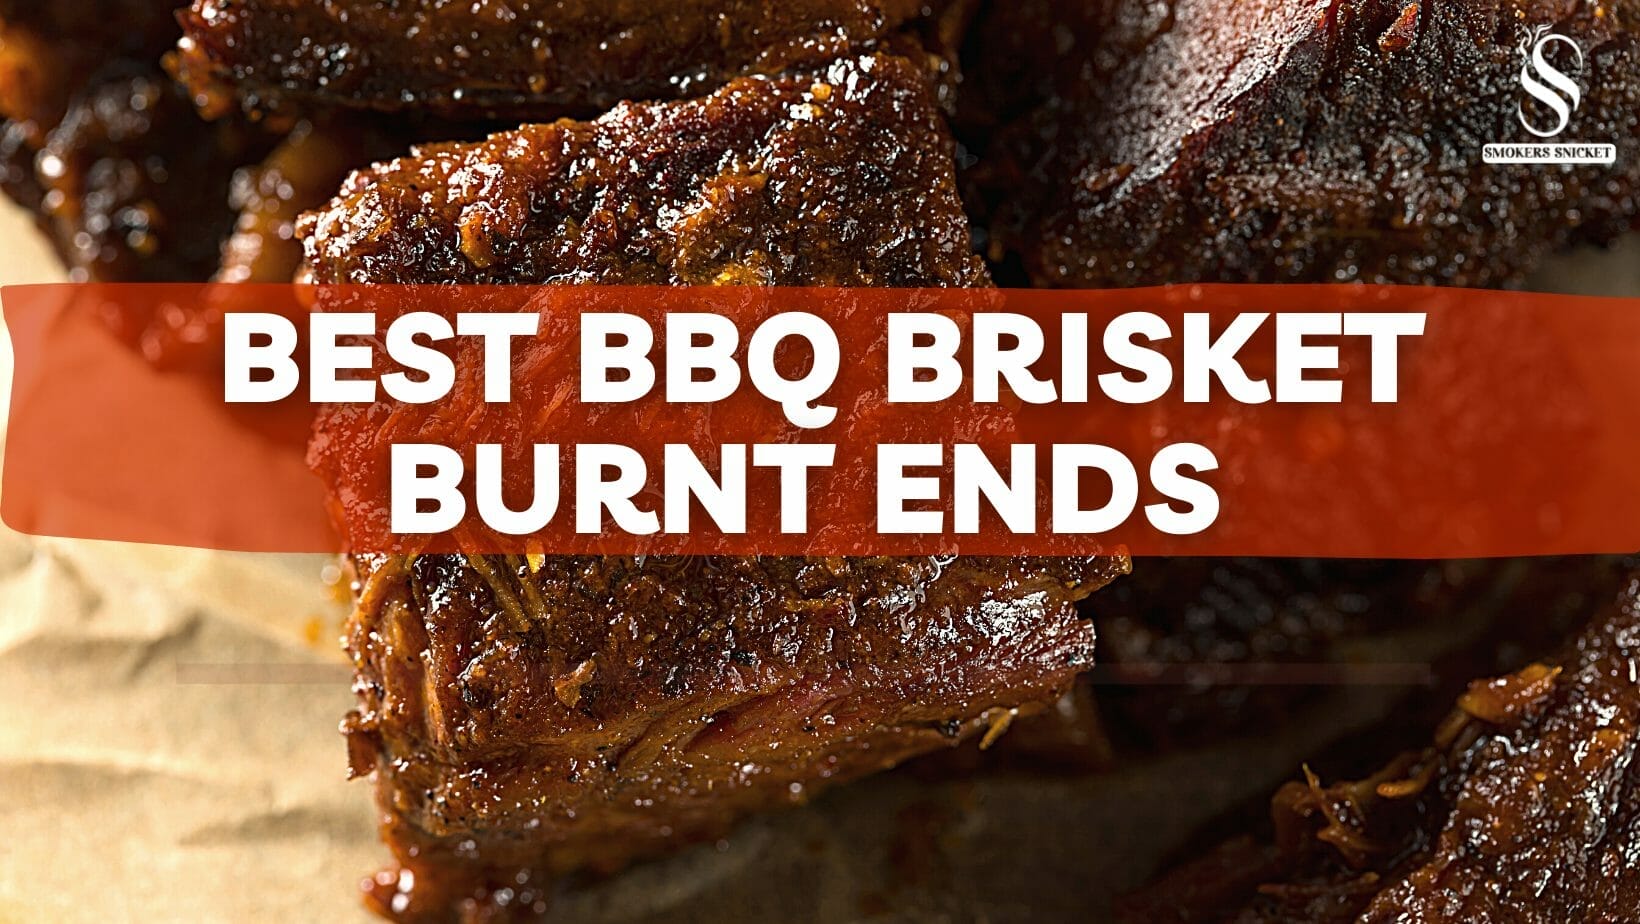 Best BBQ Brisket Burnt Ends